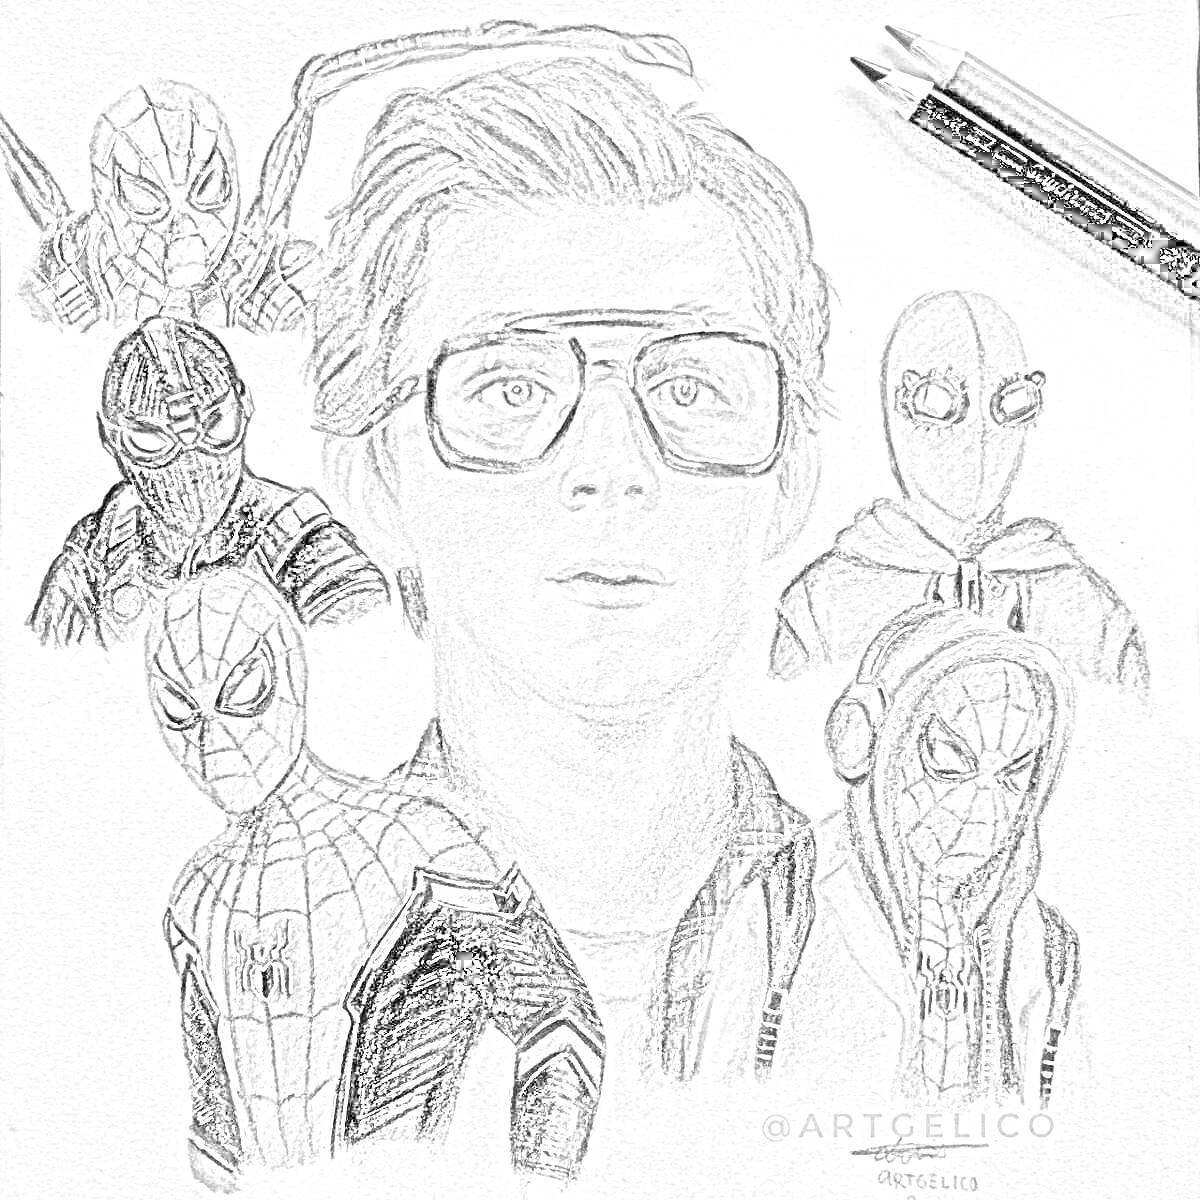 Раскраска портрет мальчика в очках с персонажами в костюмах супергероя-паука